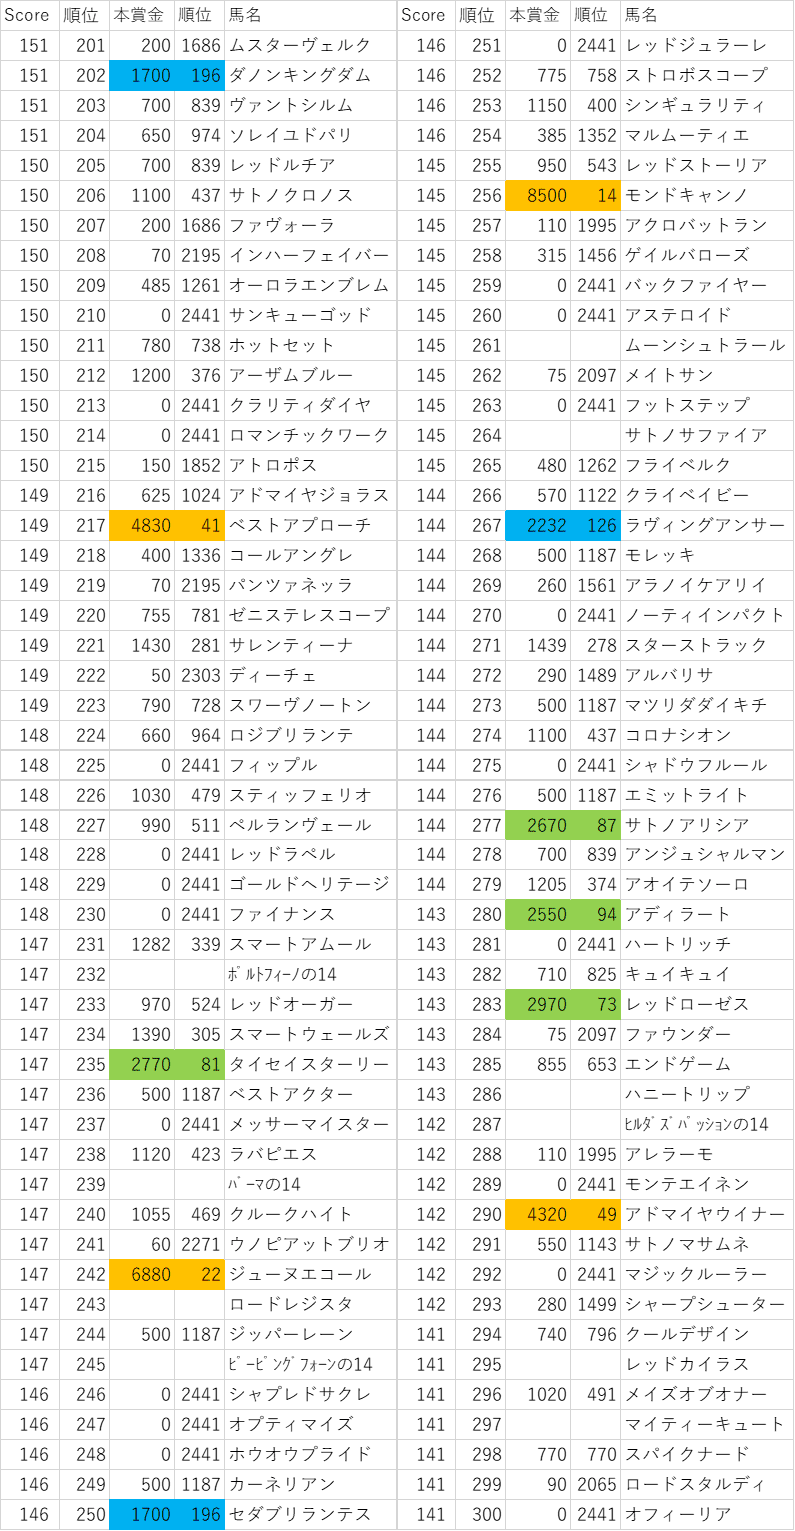 2014年産駒スコア201~300位